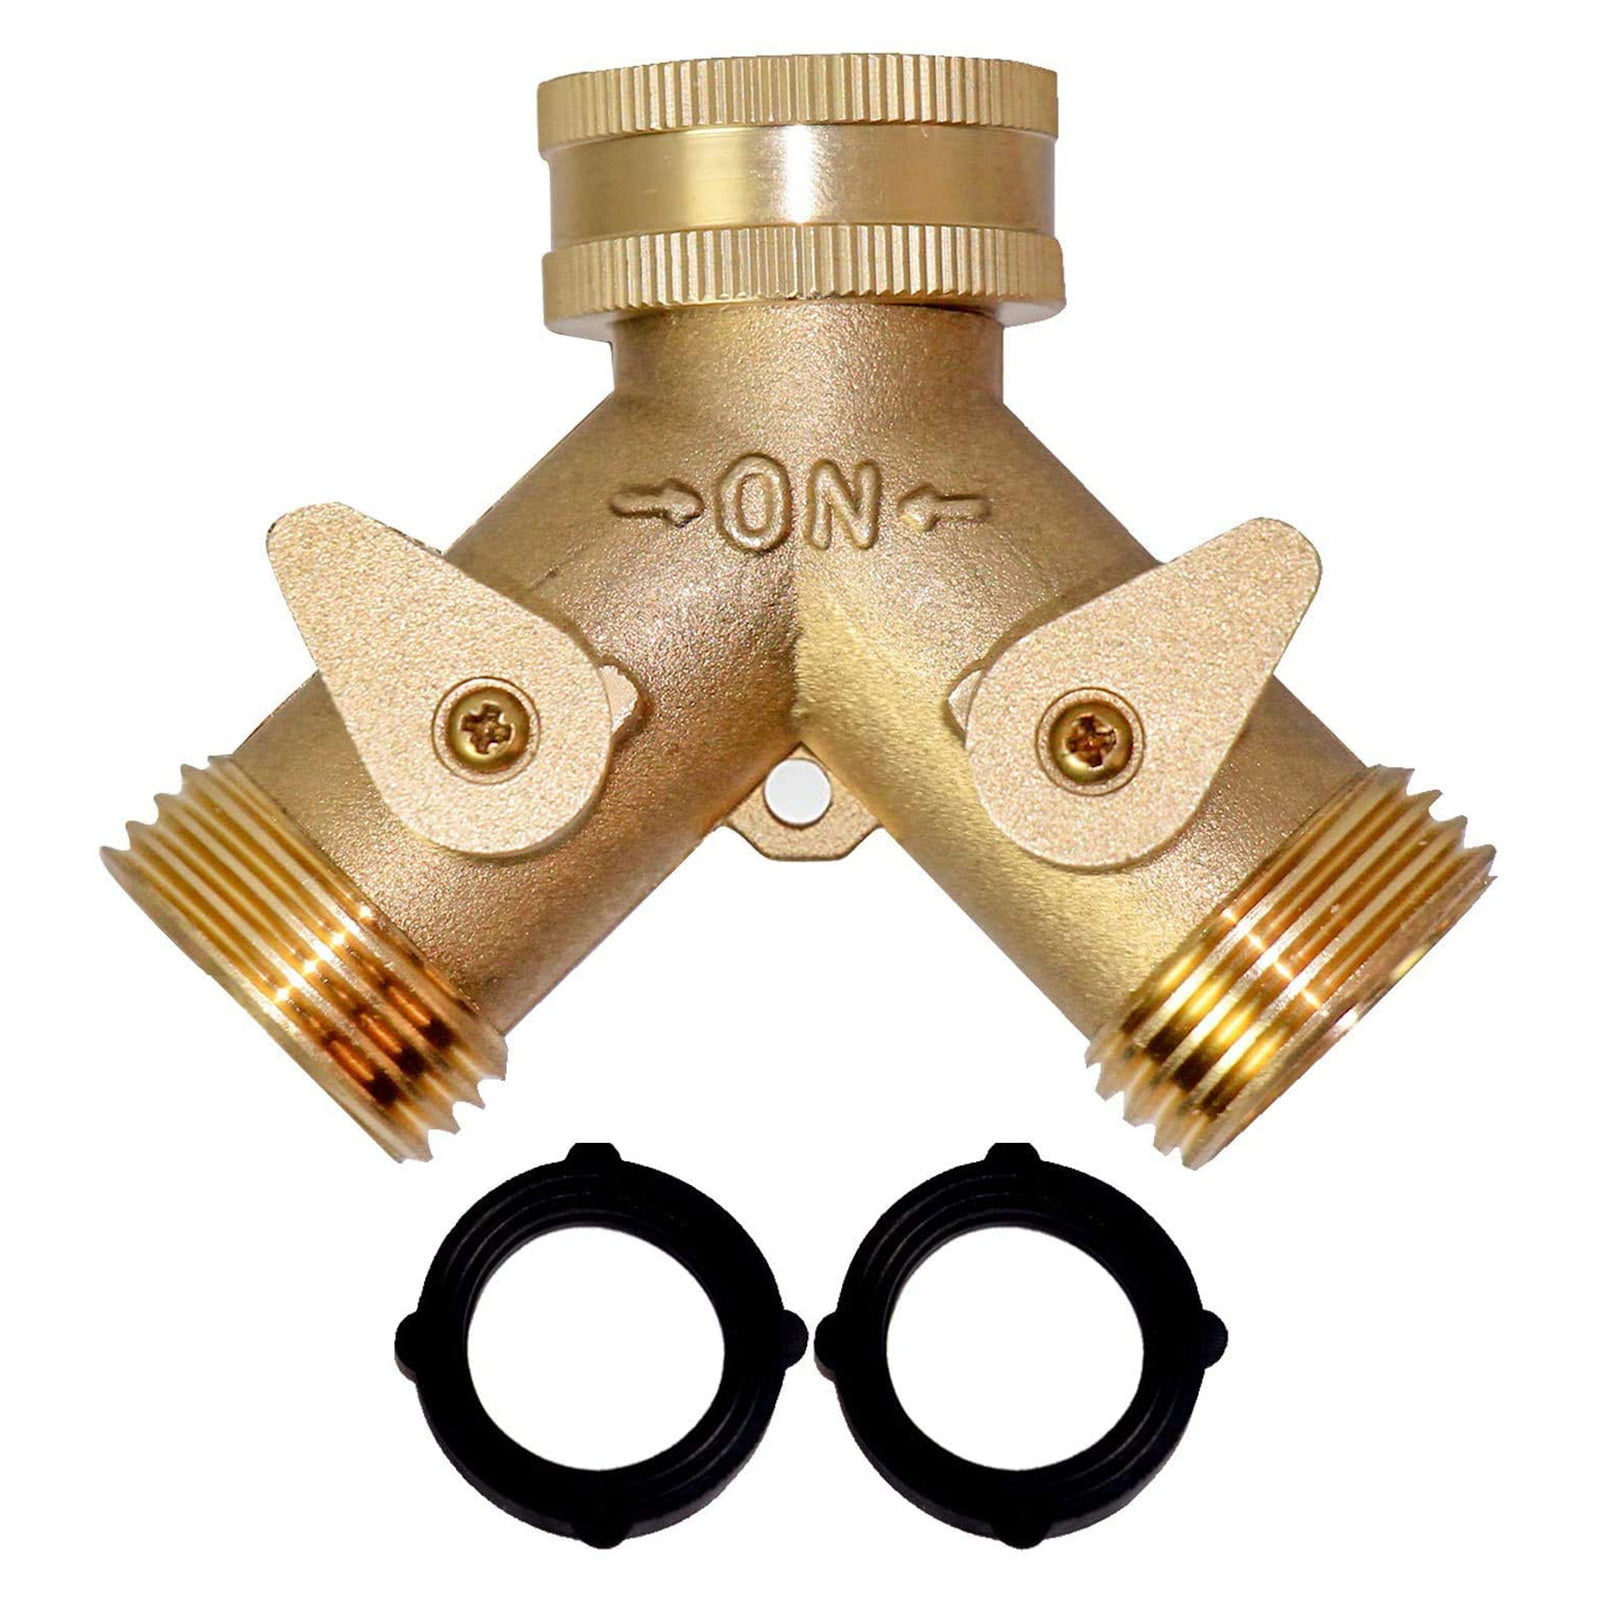 Brass 2 Way Tap Hose Faucet Connector Adaptor Splitter Garden Control Valve F3